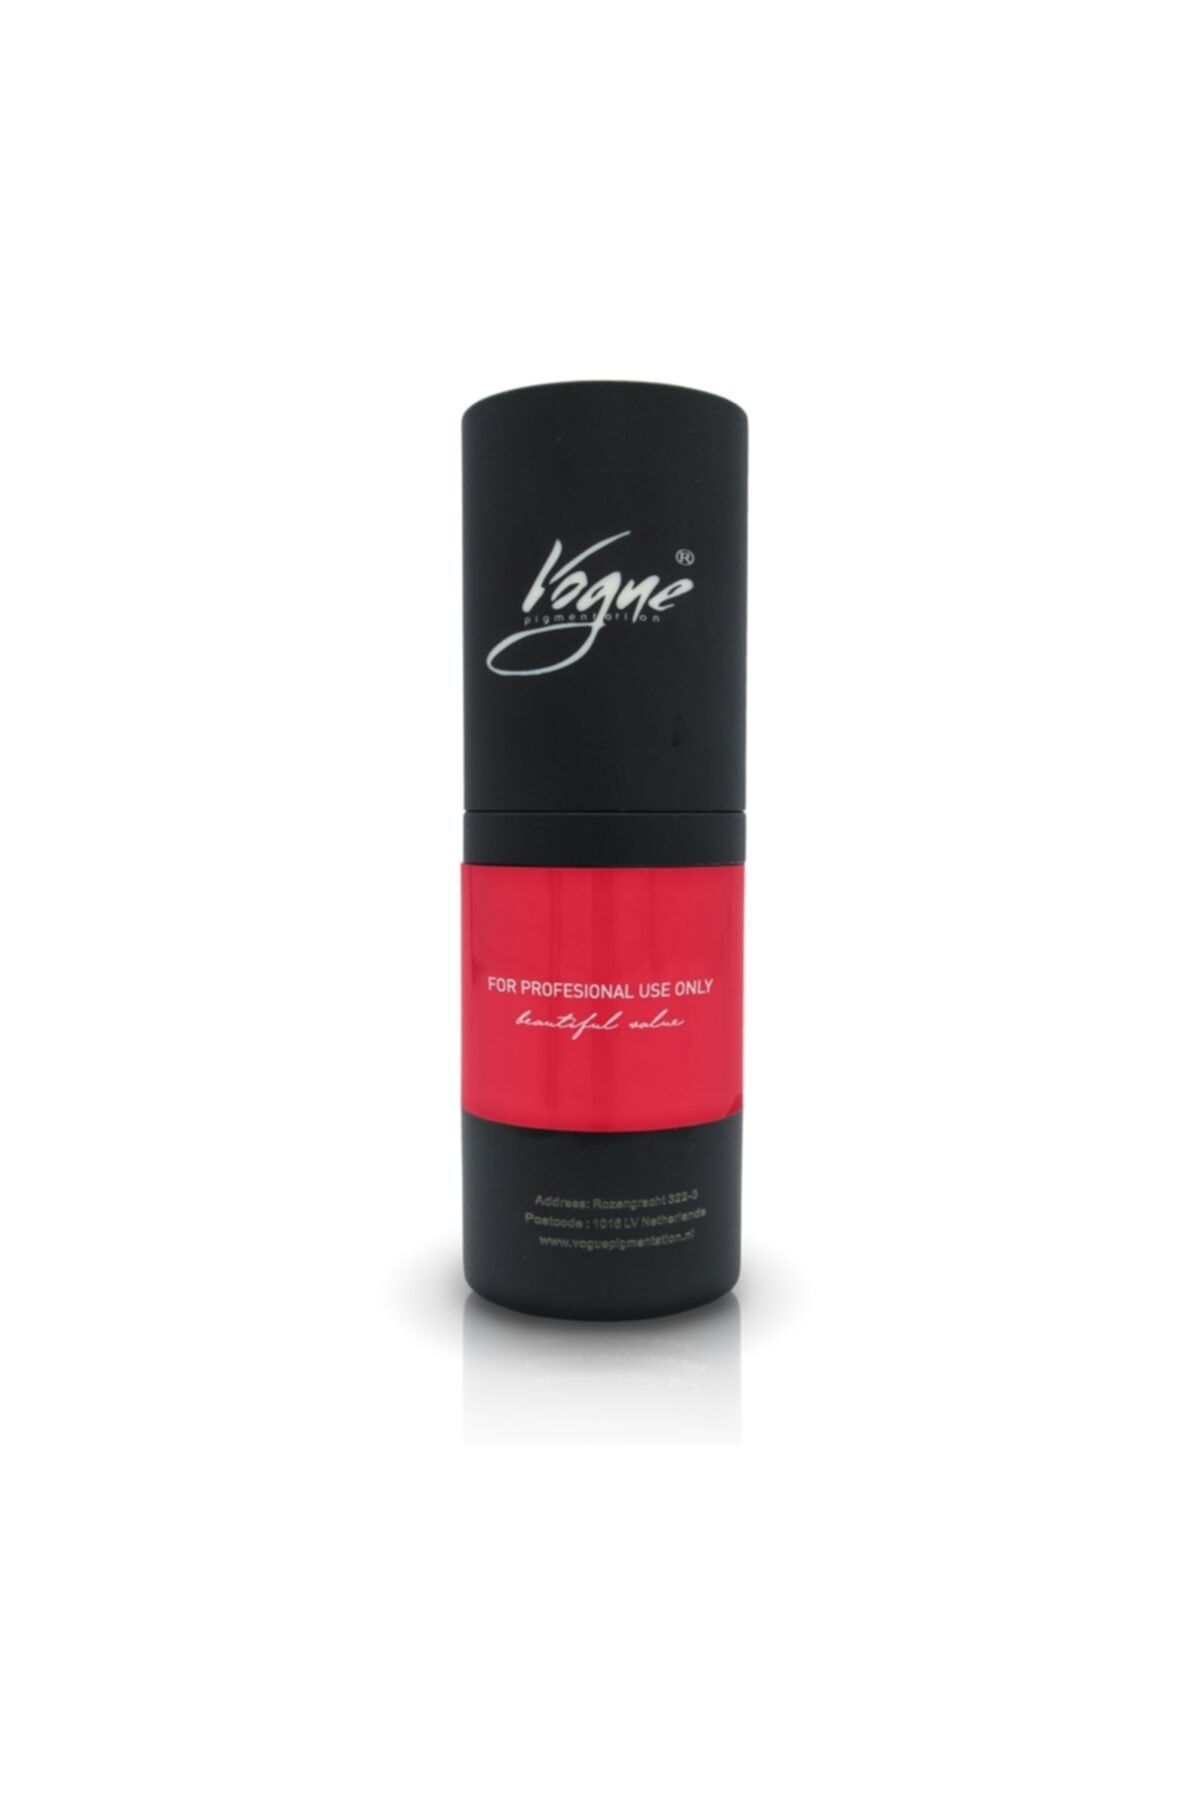 Vogue 306 Scarlet Dudak Boyası Kalıcı Makyaj Pigmenti ( Boyası ) 15ml